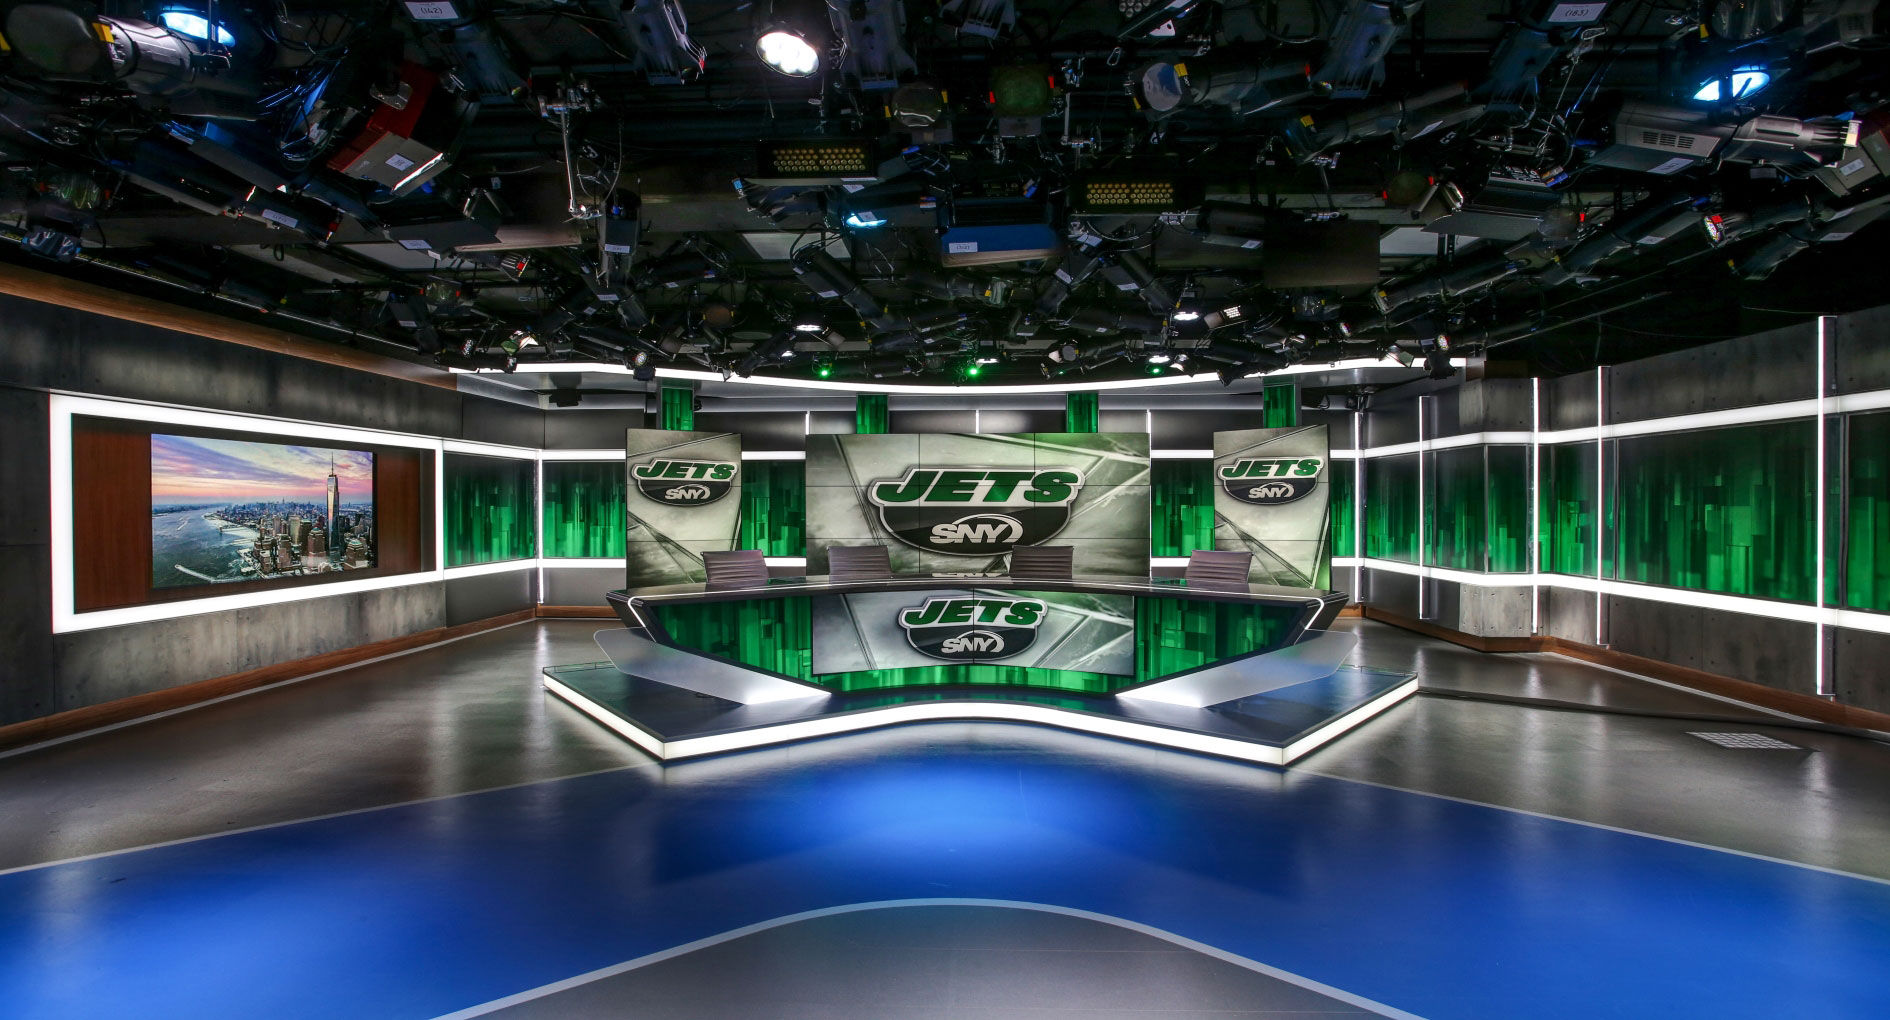 SportsNet New York studio set -- Jets